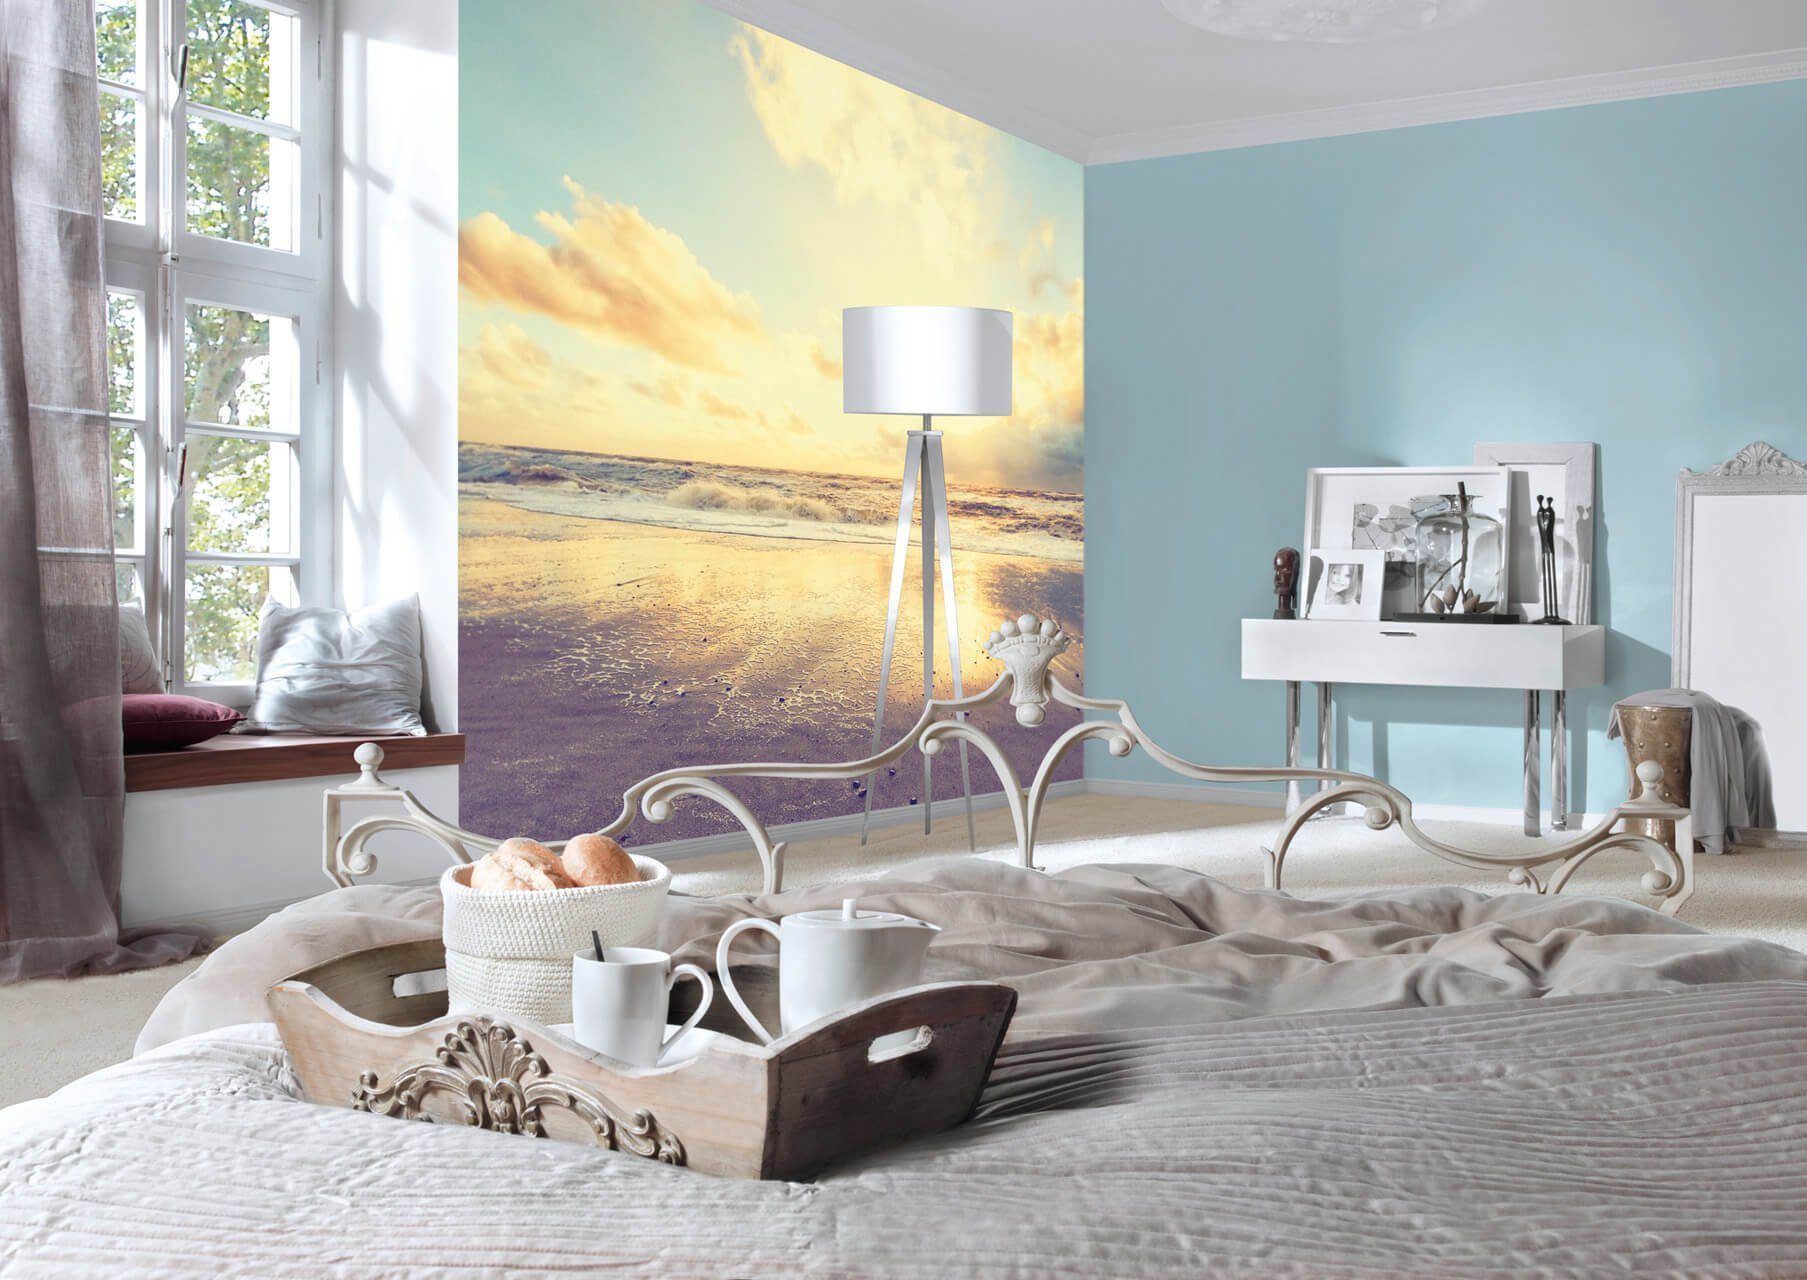 6x2.5 m, Vliestapete Beach Sunrise KUNSTLOFT Design glänzend, Tapete lichtbeständige leicht